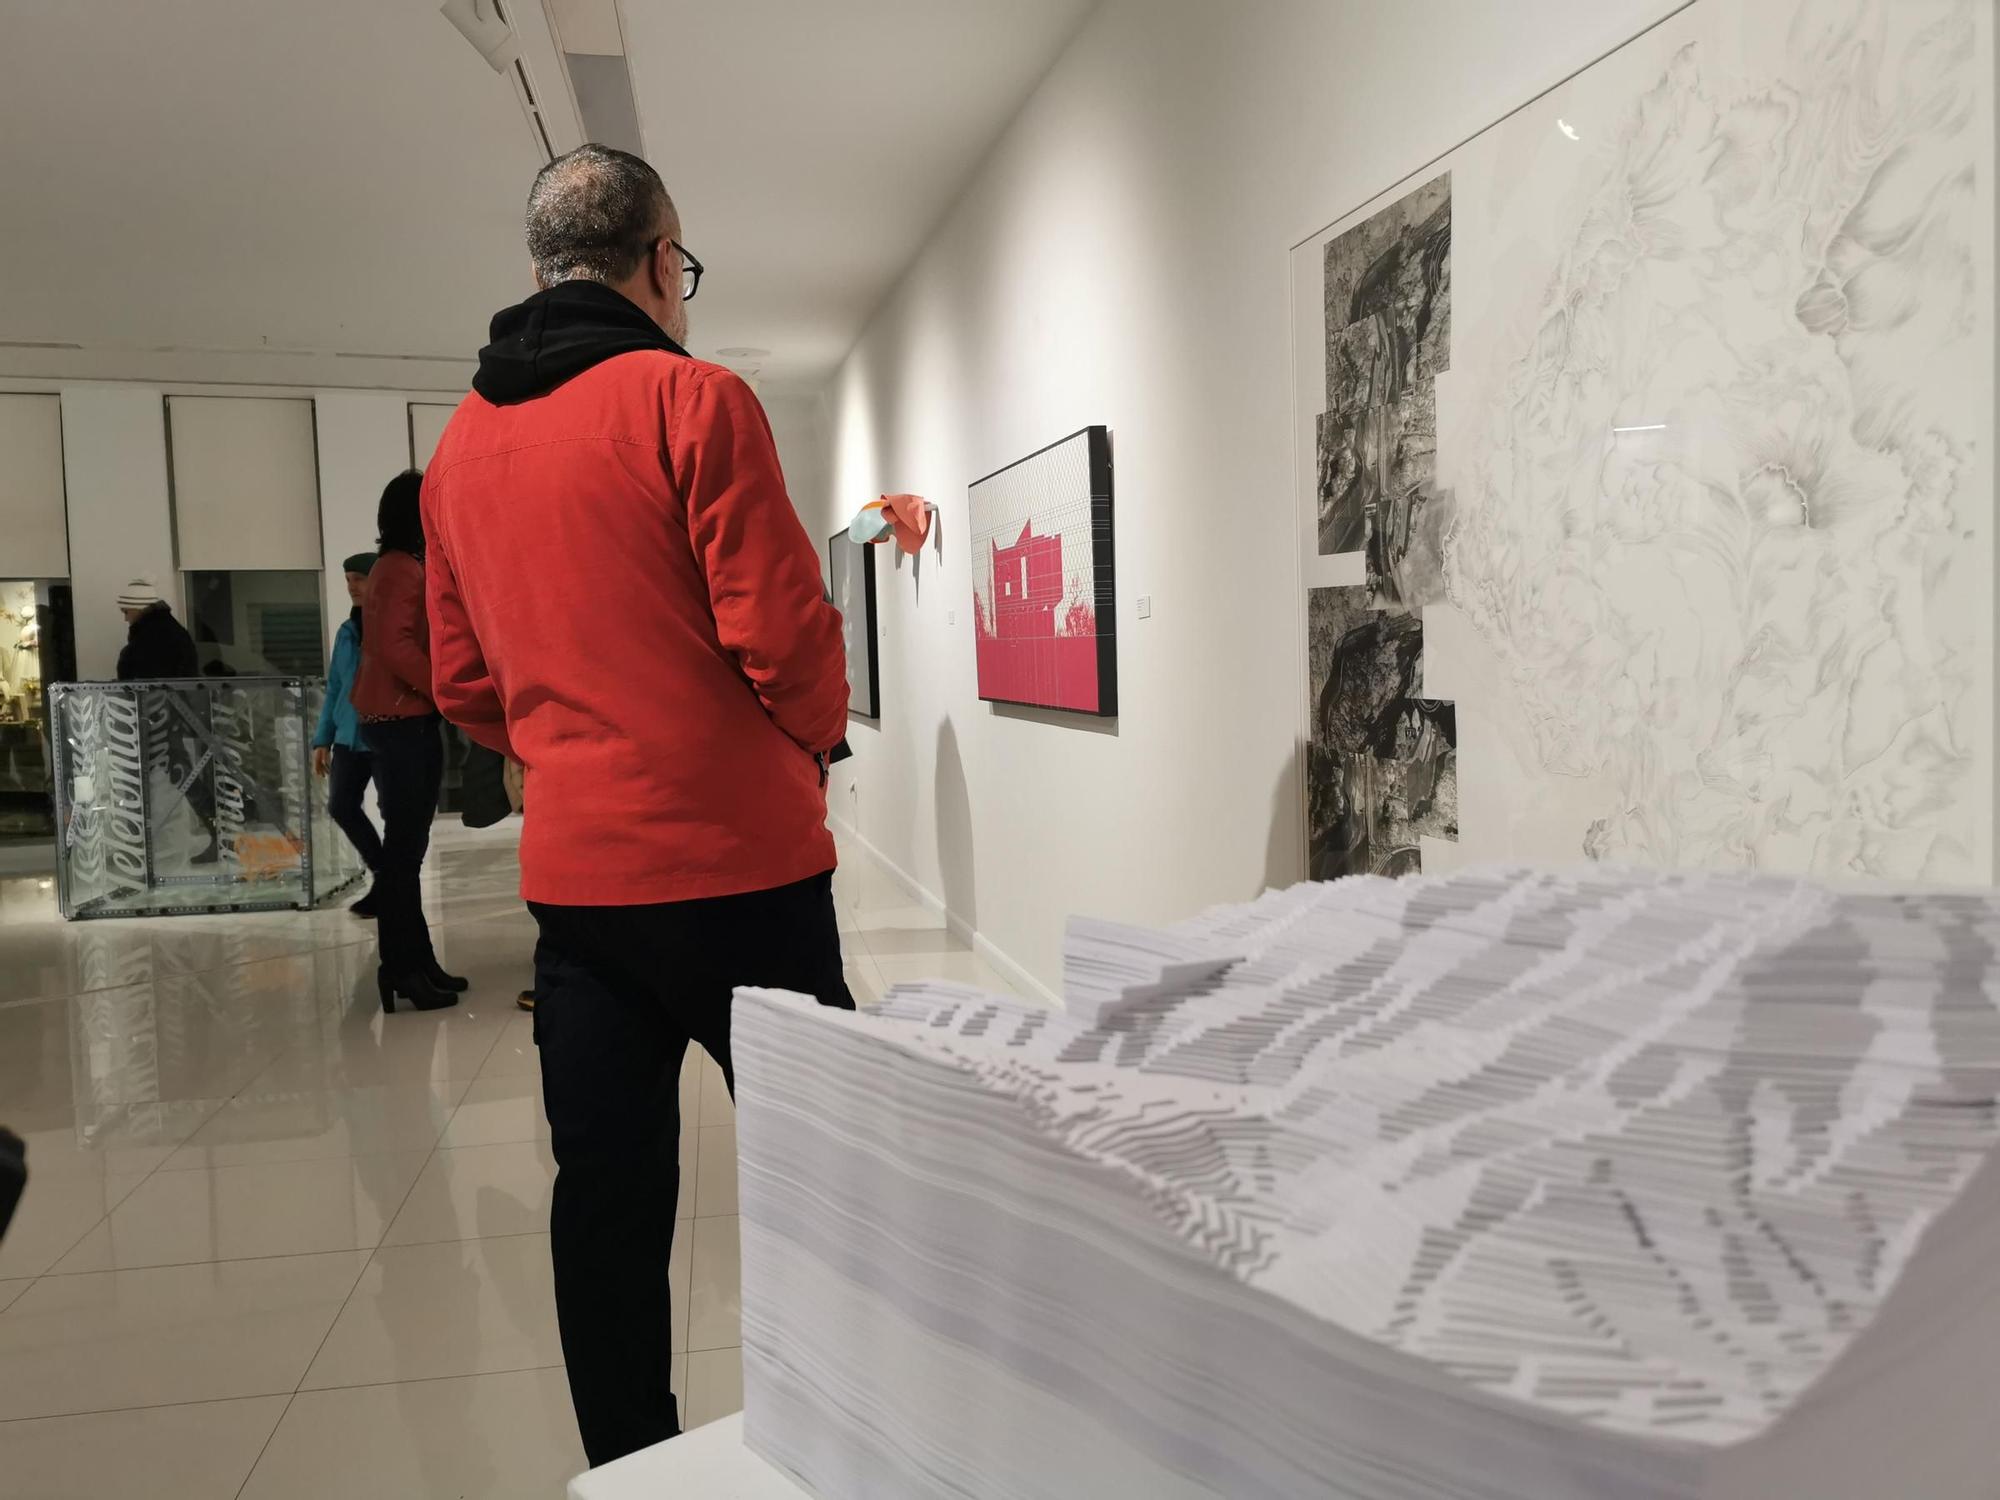 El Premio de Artes Plásticas recae en el artista madrileño Ignacio García y su dibujo “La Torre de la estabilidad”